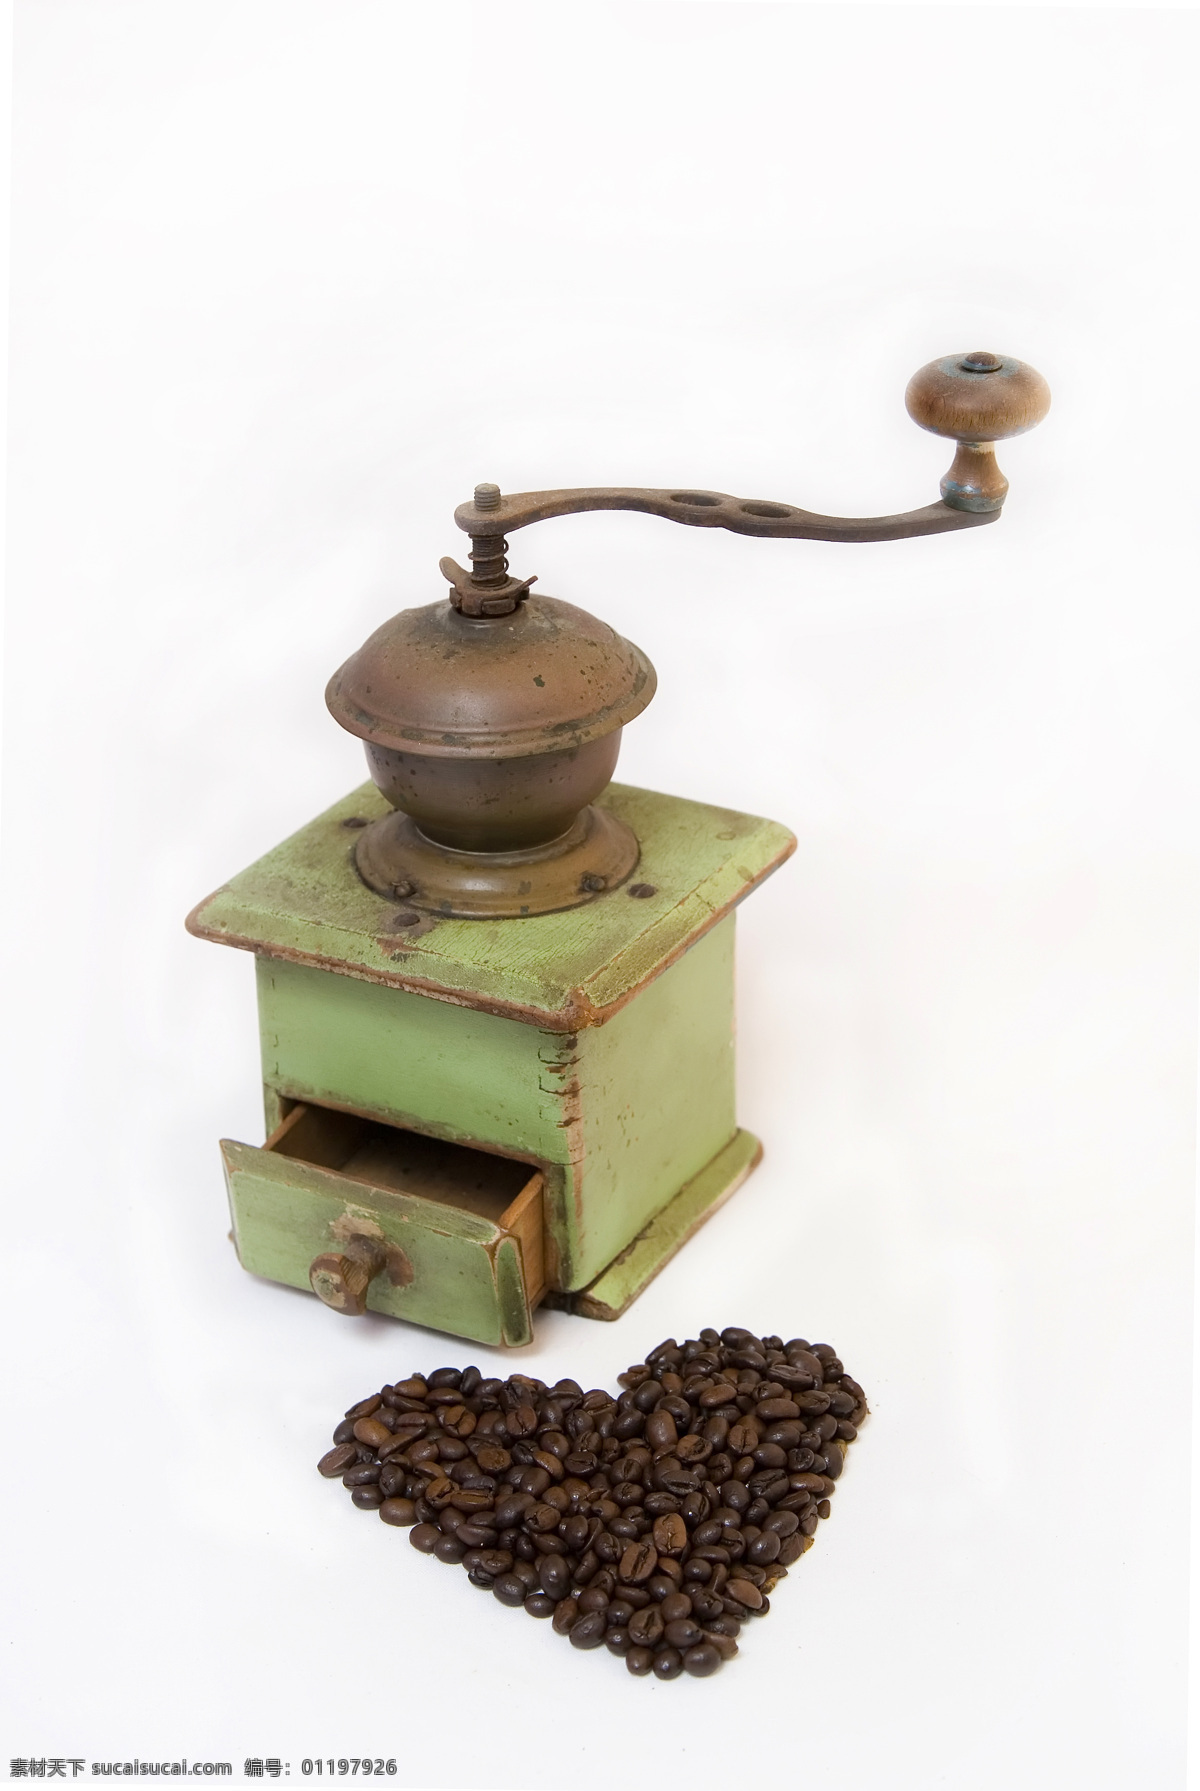 咖啡研磨机 咖啡 研磨 研磨机 古老 咖啡豆 咖啡粉 心形 餐具厨具 餐饮美食